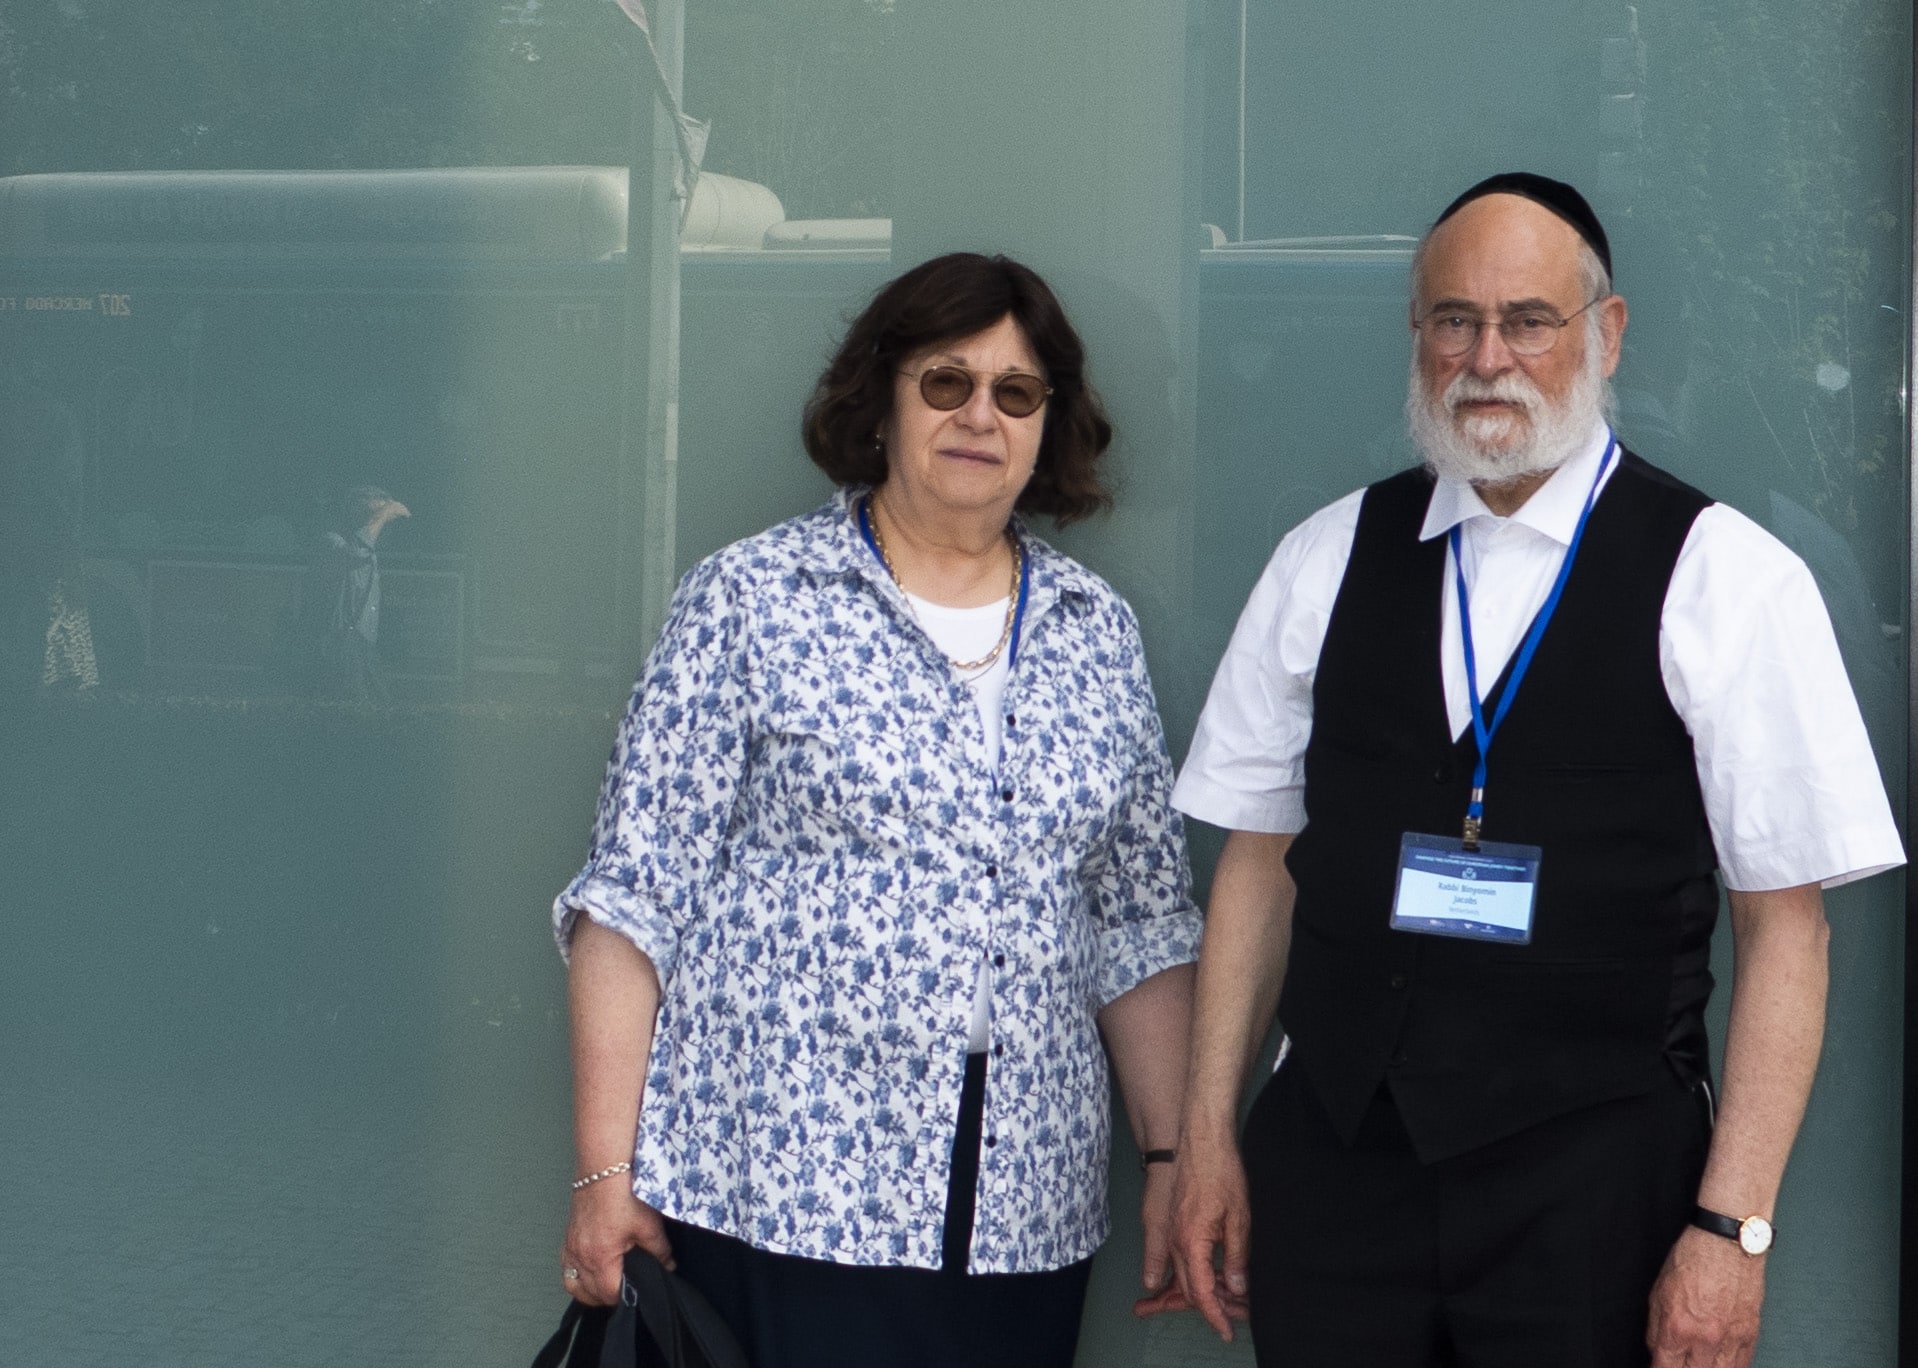 הרב הראשי של הולנד בנימין יעקובס ואשתו בלומה מבקרים במוזיאון השואה בפורטו, פורטוגל, 16 במאי 2023 (צילום: כנען לידור)